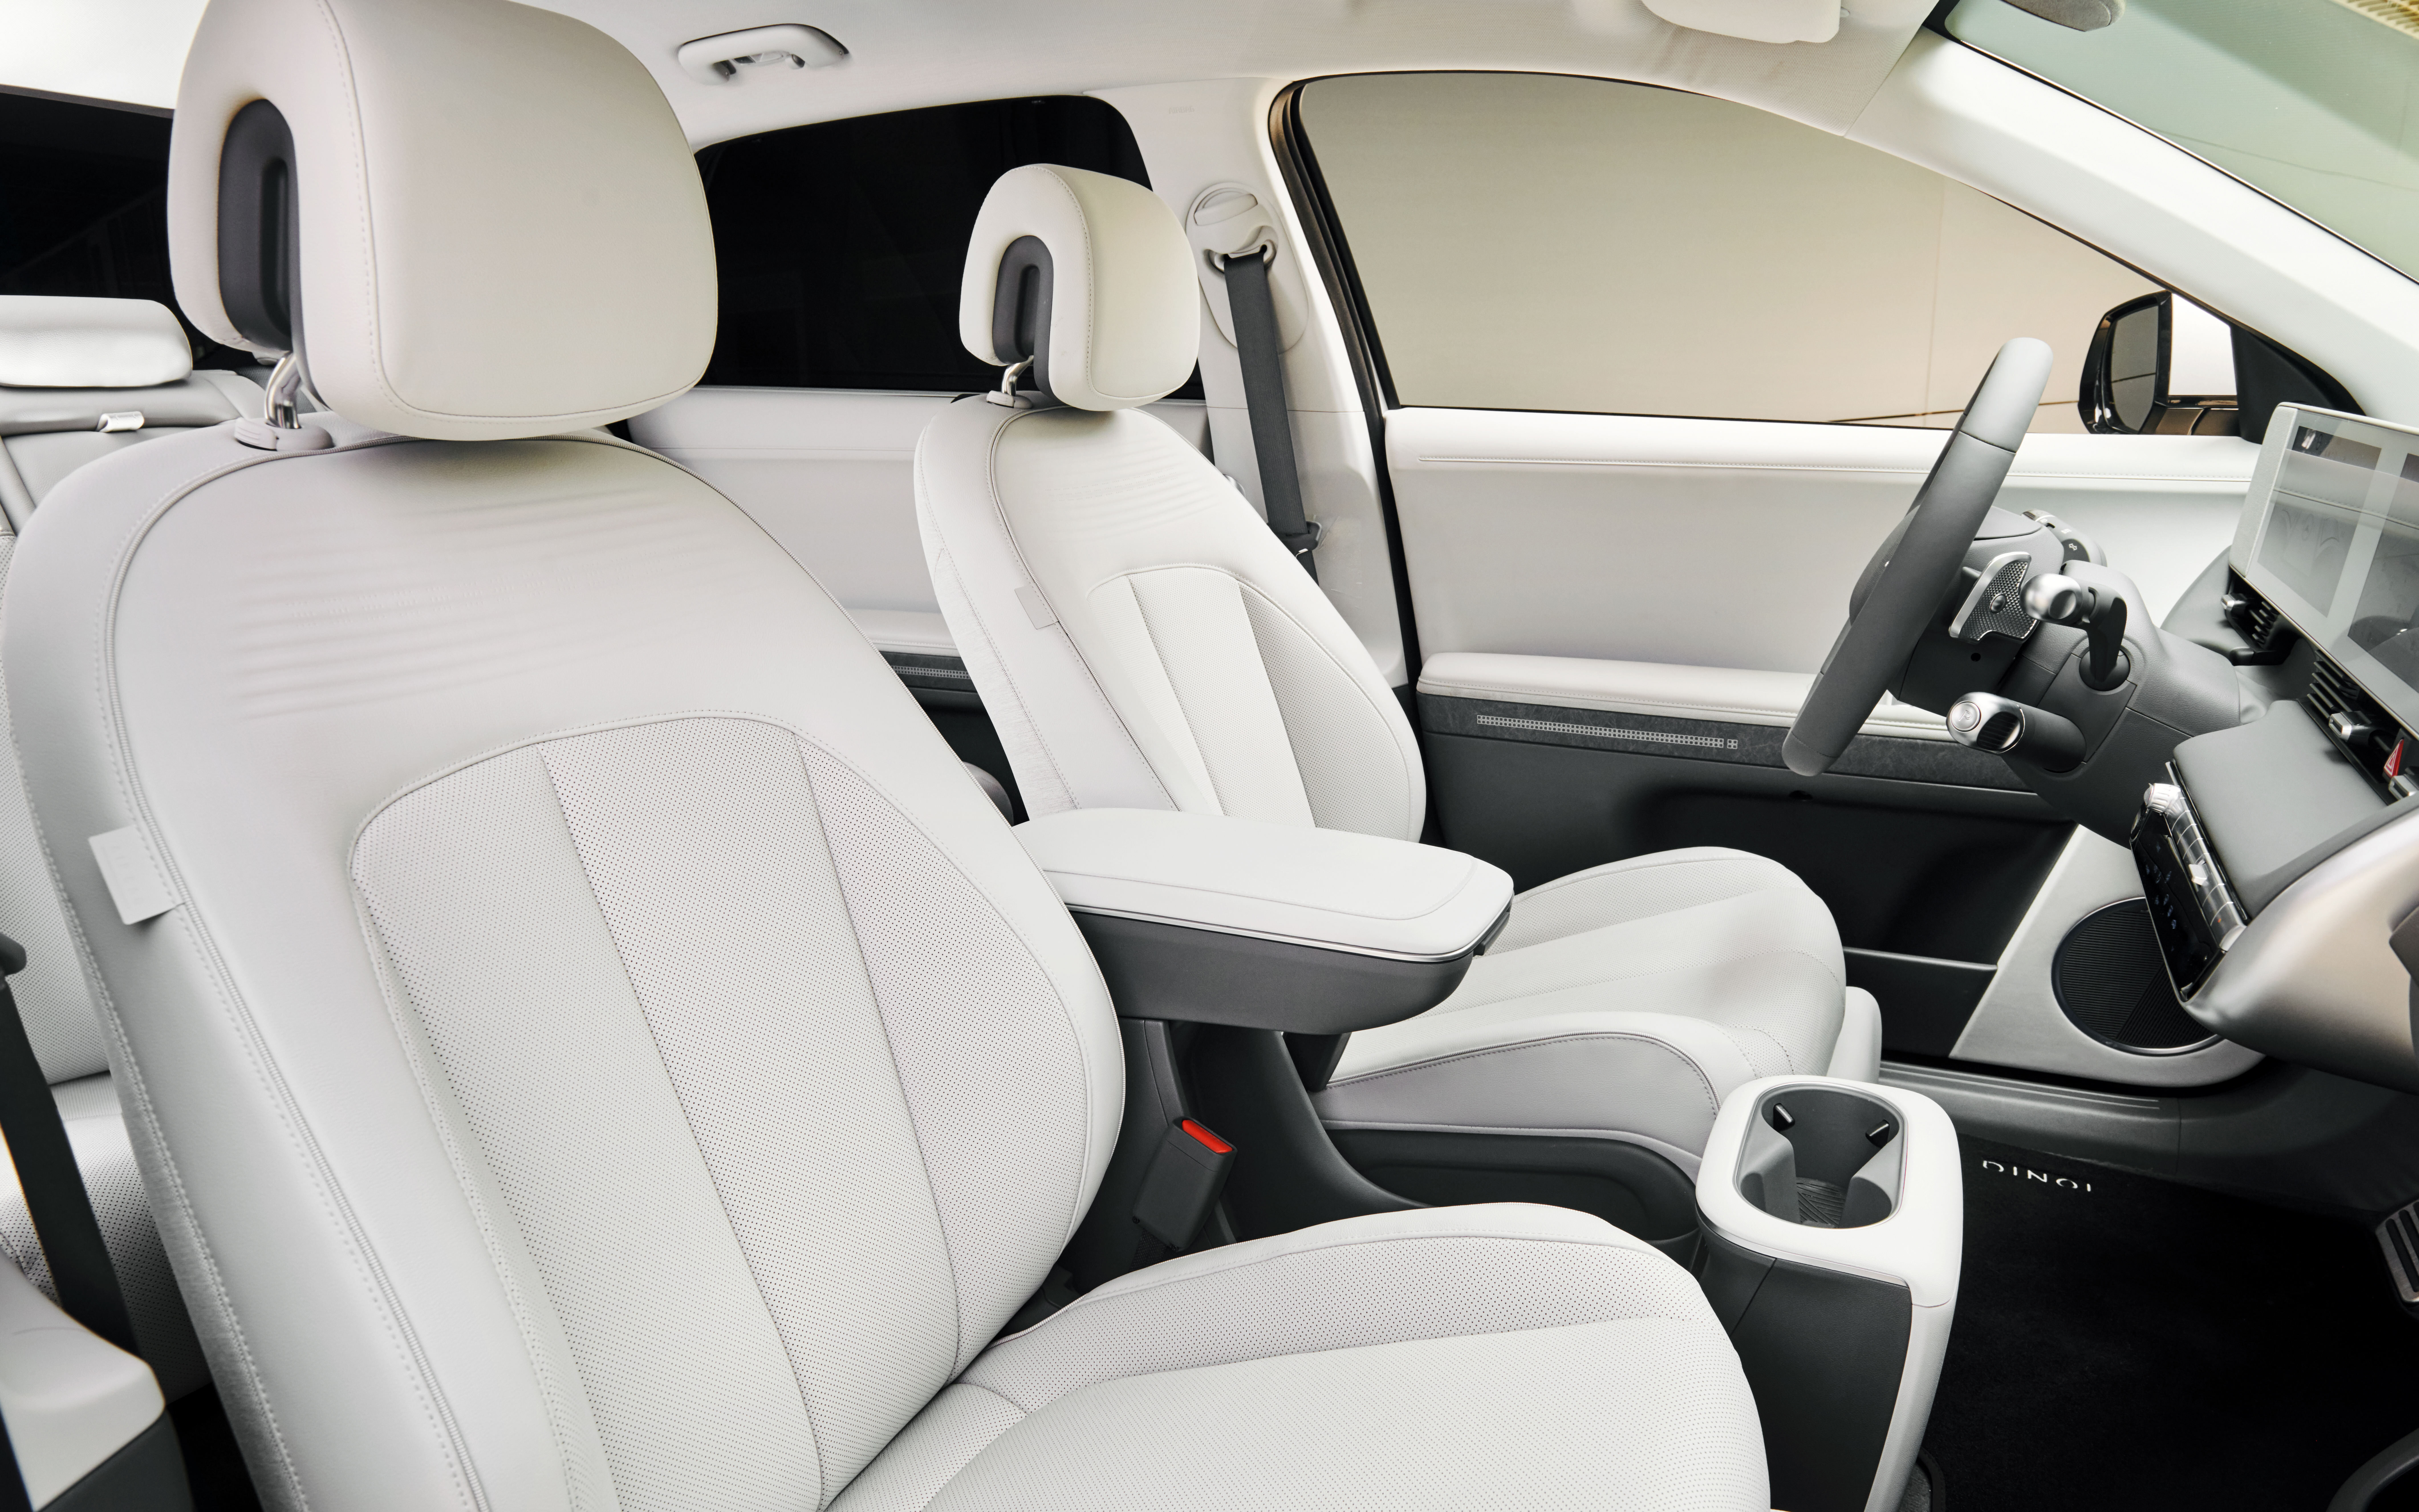 2023 Hyundai Ioniq 5 Q3 2023 Sales Interior Image 3